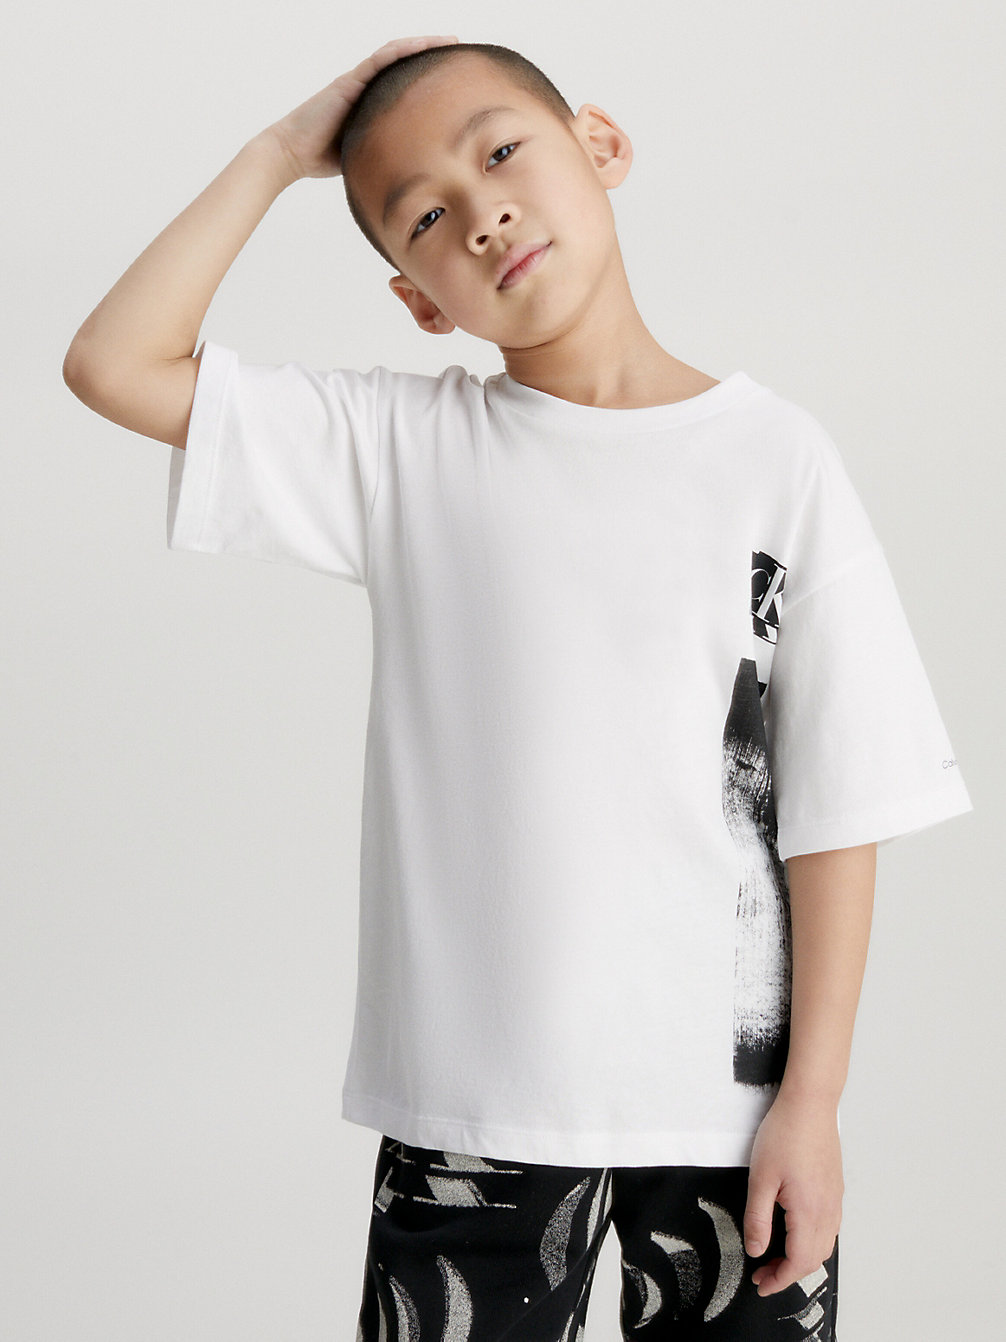 BRIGHT WHITE Lässiges T-Shirt Mit Grafik In Glitch-Optik undefined Jungen Calvin Klein